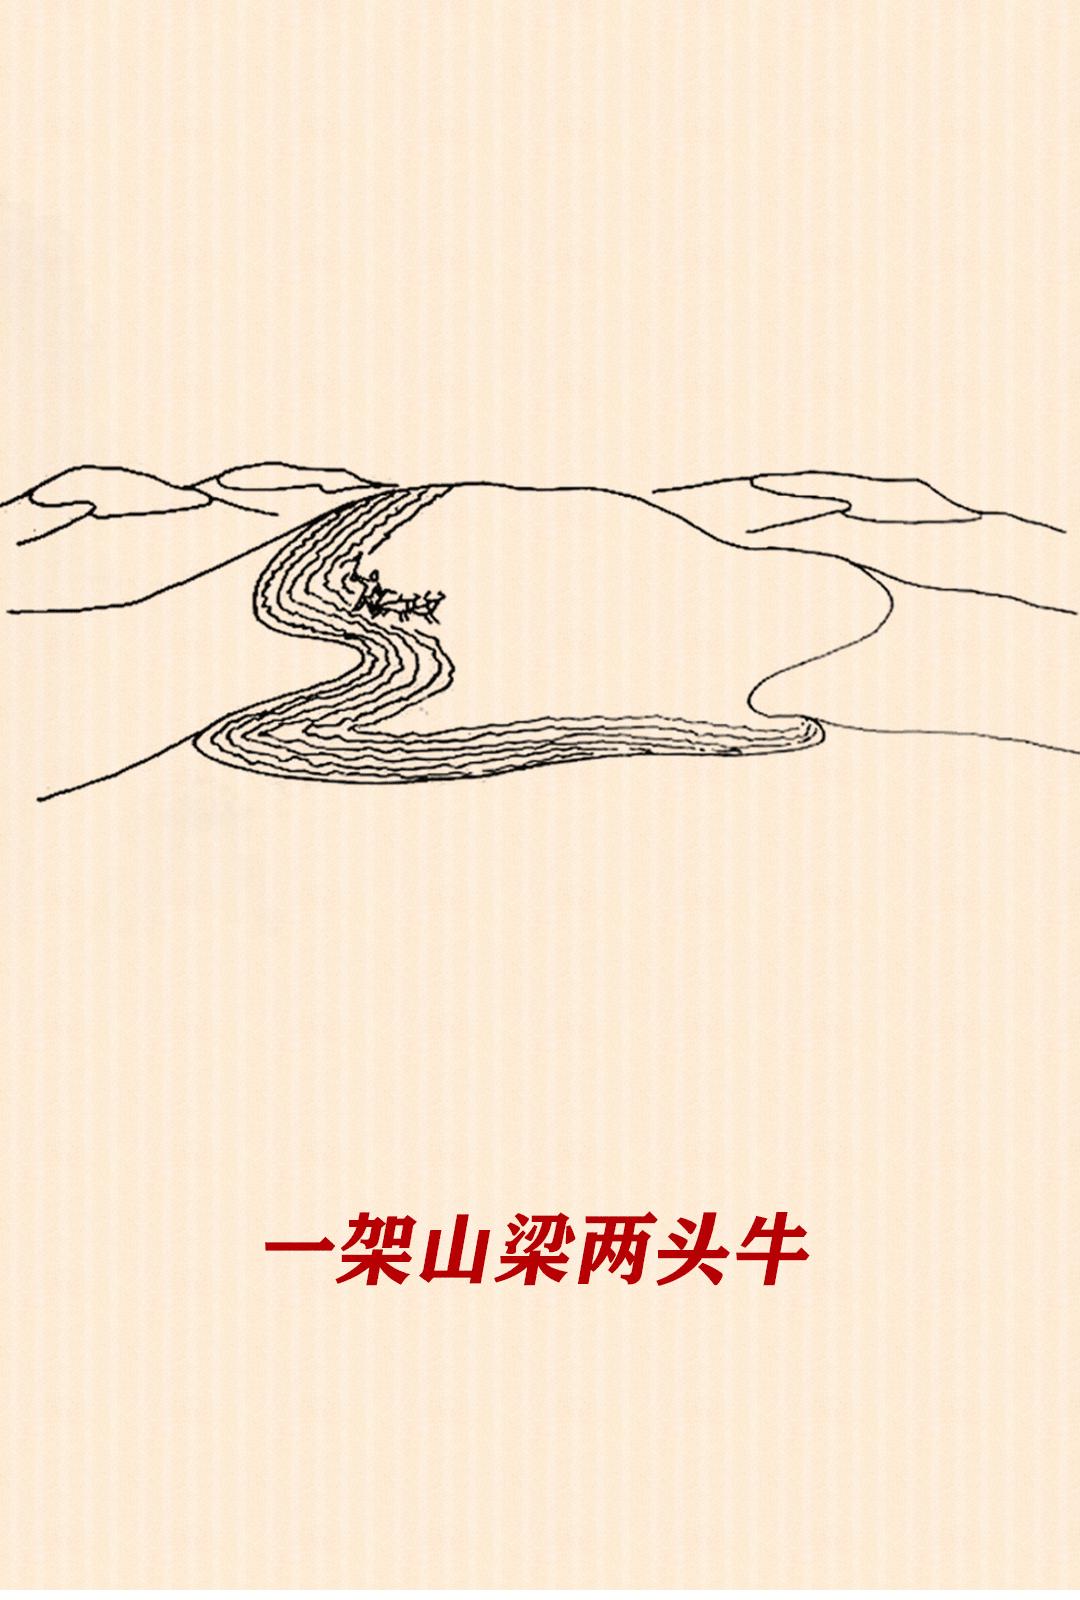 宁夏漫画家何富成手绘西海固脱贫长卷：这些画面有没有暖到你？